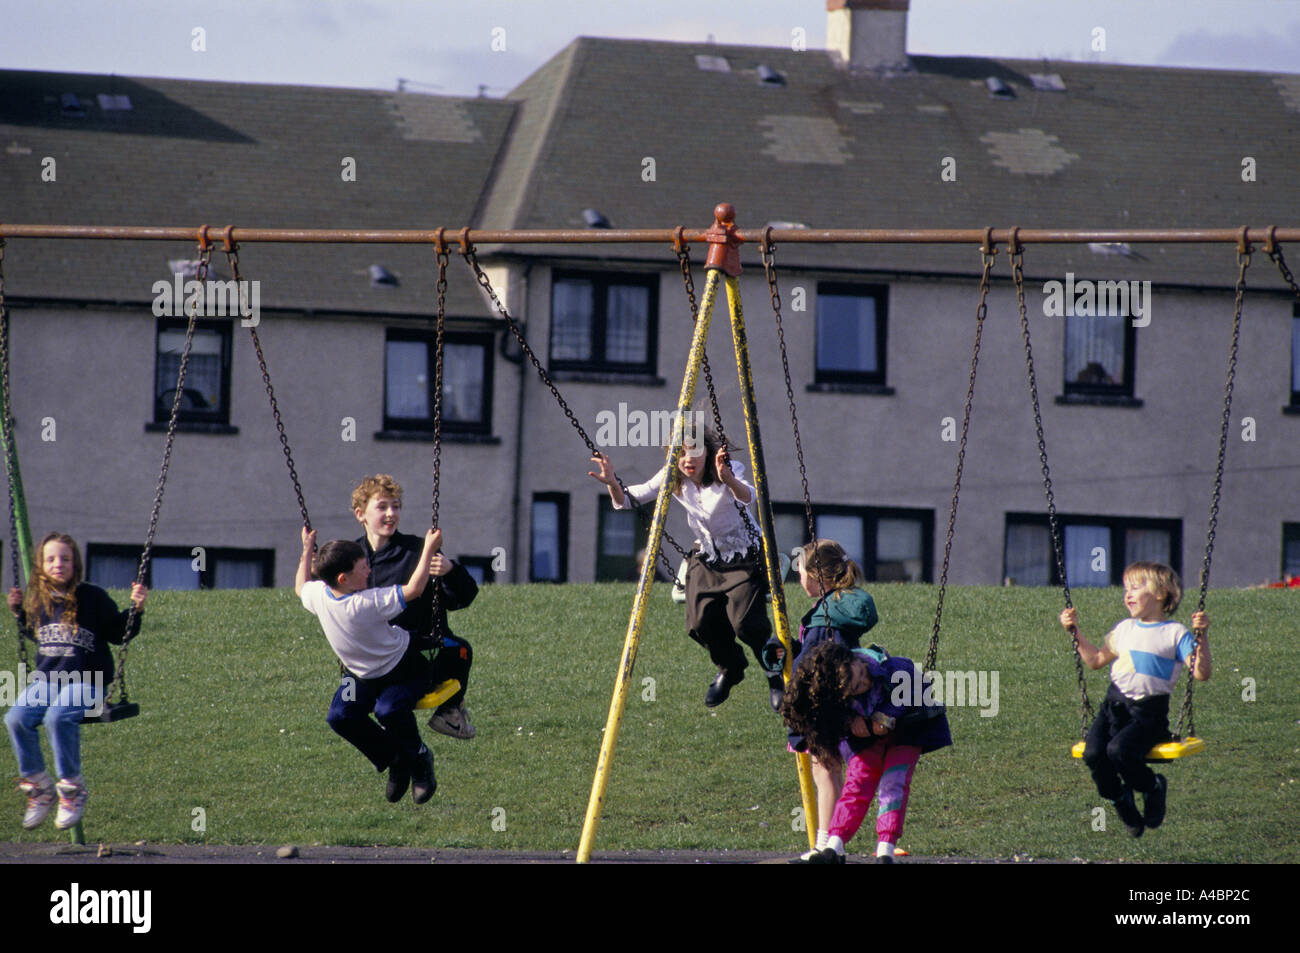 Motherwell, Escocia, marzo de 1992. Los niños juegan en los columpios. Ravenscraig acería cerrada en 1992 causando un desempleo masivo en la zona. Foto de stock